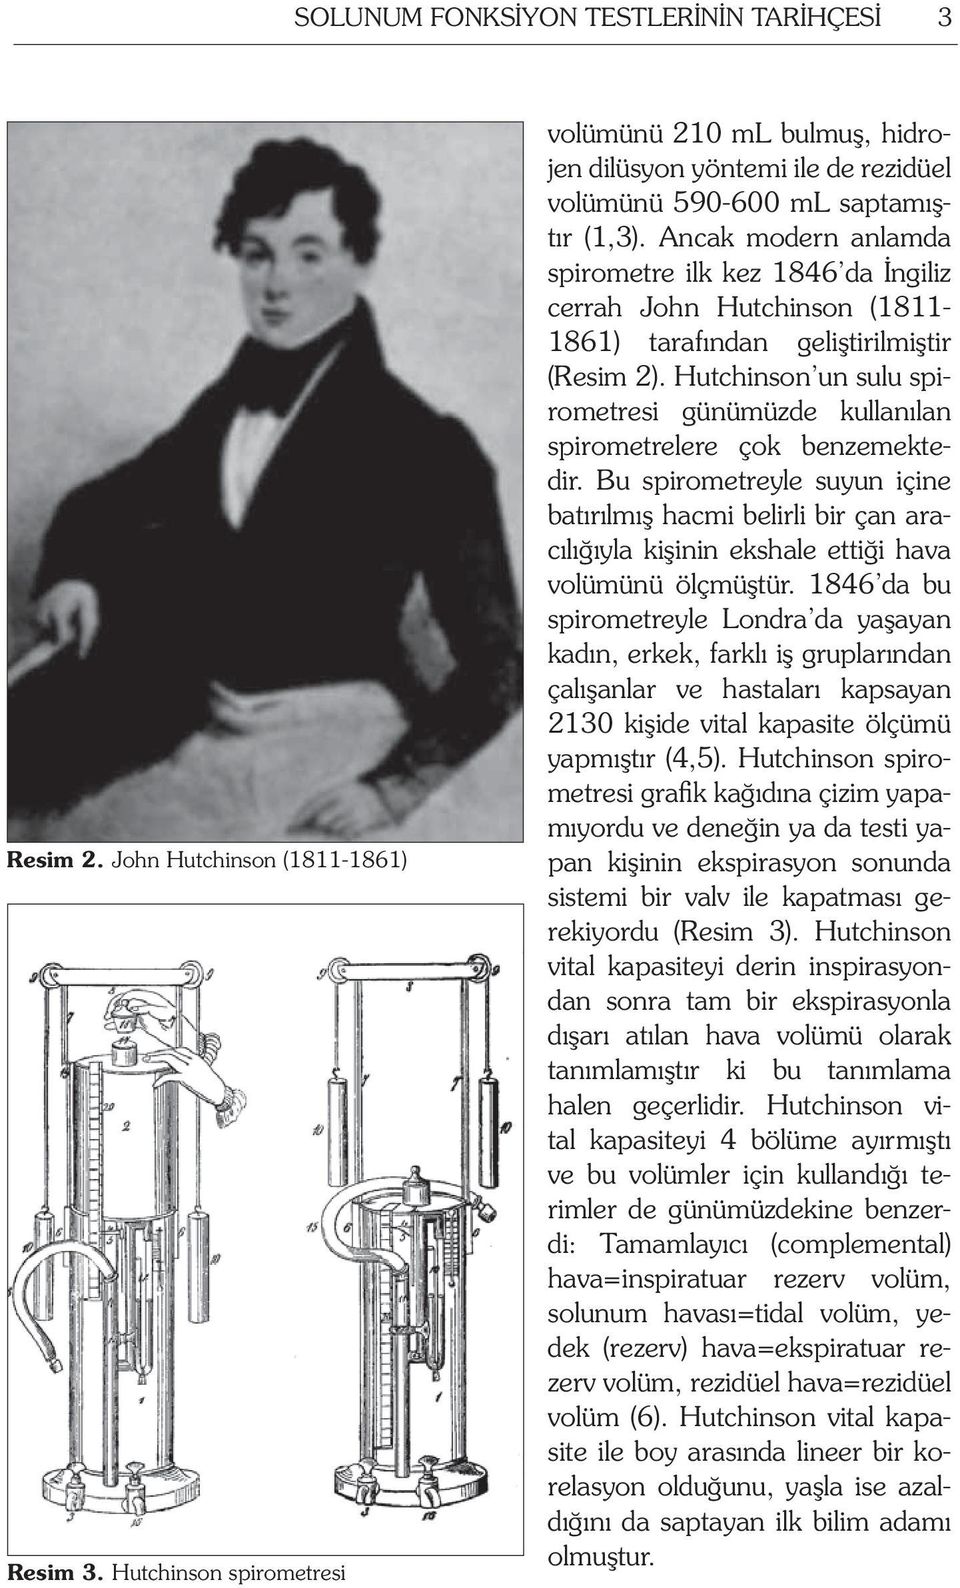 Ancak modern anlamda spirometre ilk kez 1846 da İngiliz cerrah John Hutchinson (1811-1861) tarafından geliştirilmiştir (Resim 2).